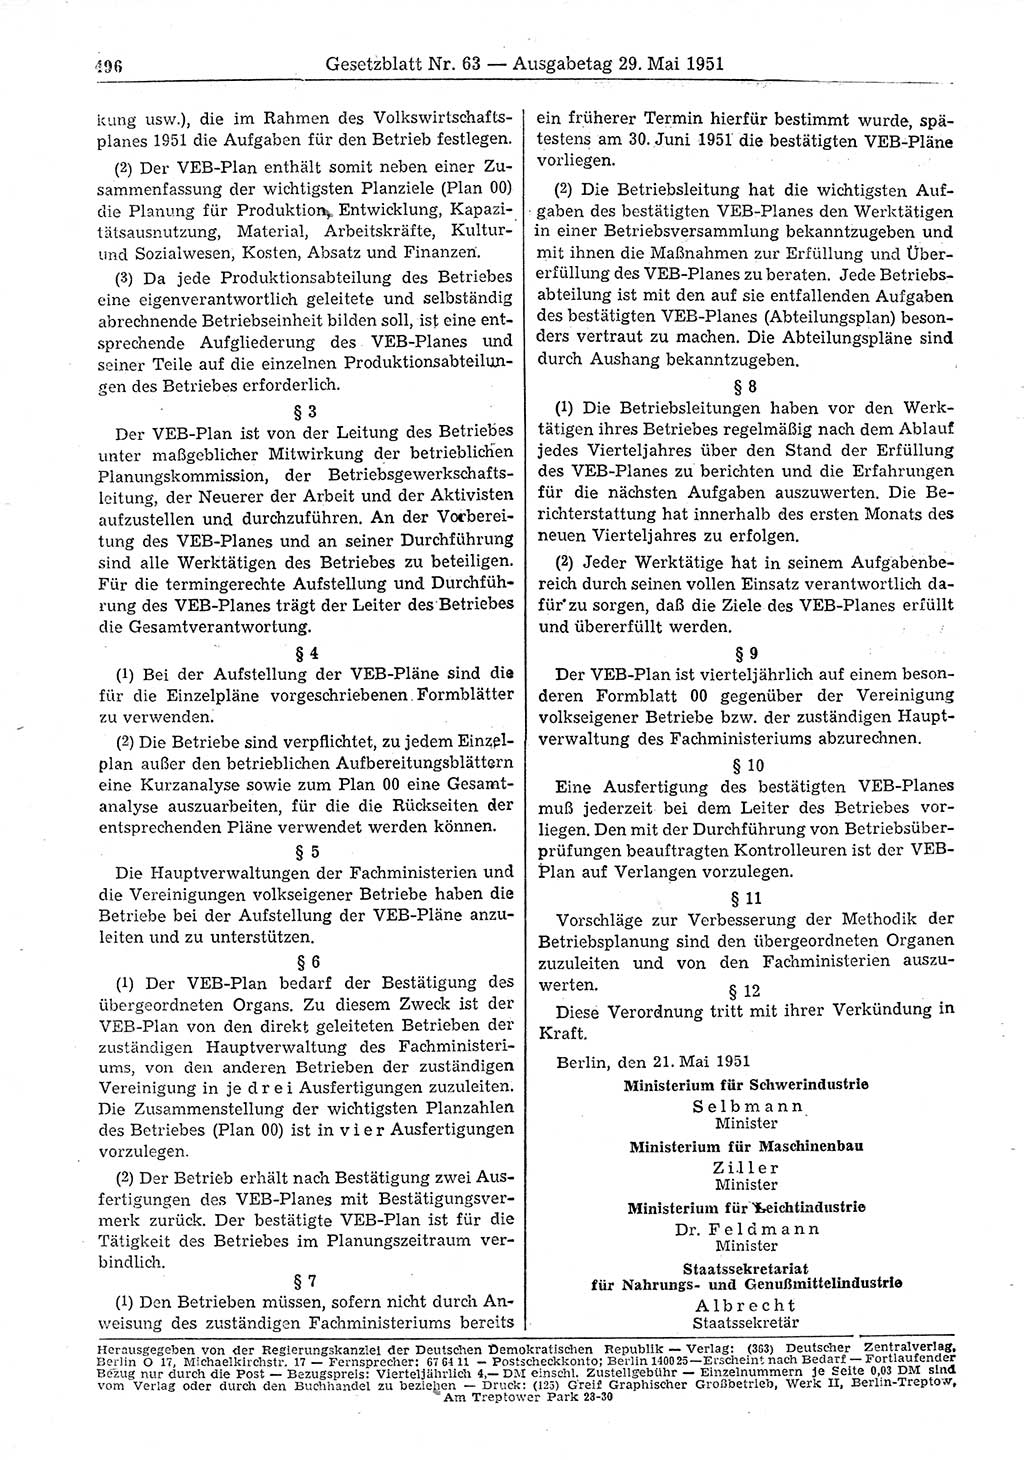 Gesetzblatt (GBl.) der Deutschen Demokratischen Republik (DDR) 1951, Seite 496 (GBl. DDR 1951, S. 496)